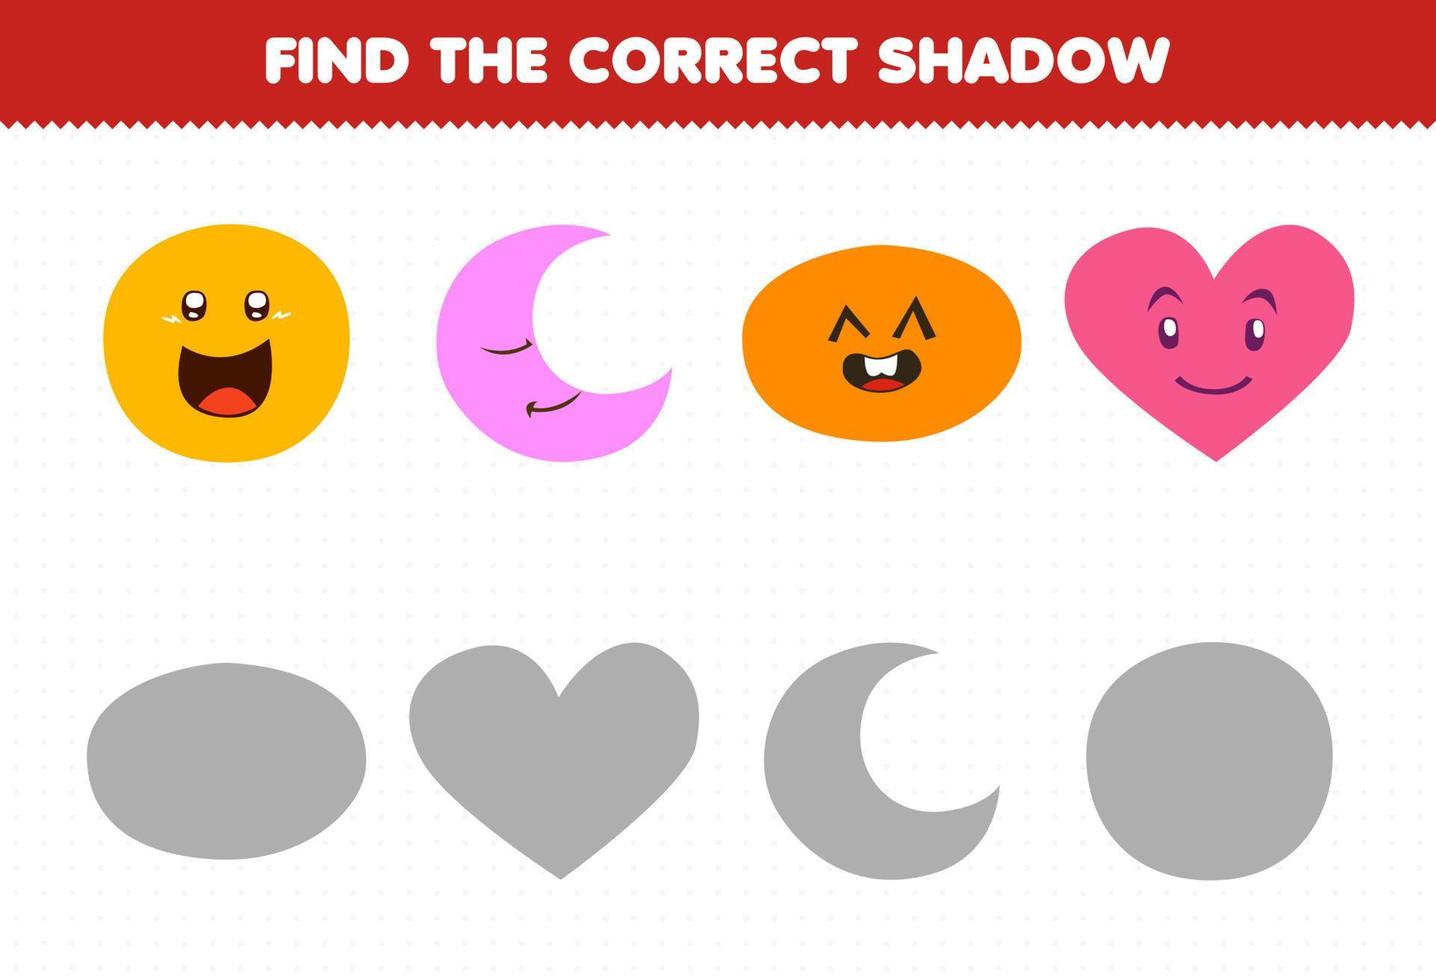 juego educativo para niños encontrar la sombra correcta conjunto de dibujos animados lindo forma geométrica círculo media luna corazón ovalado vector